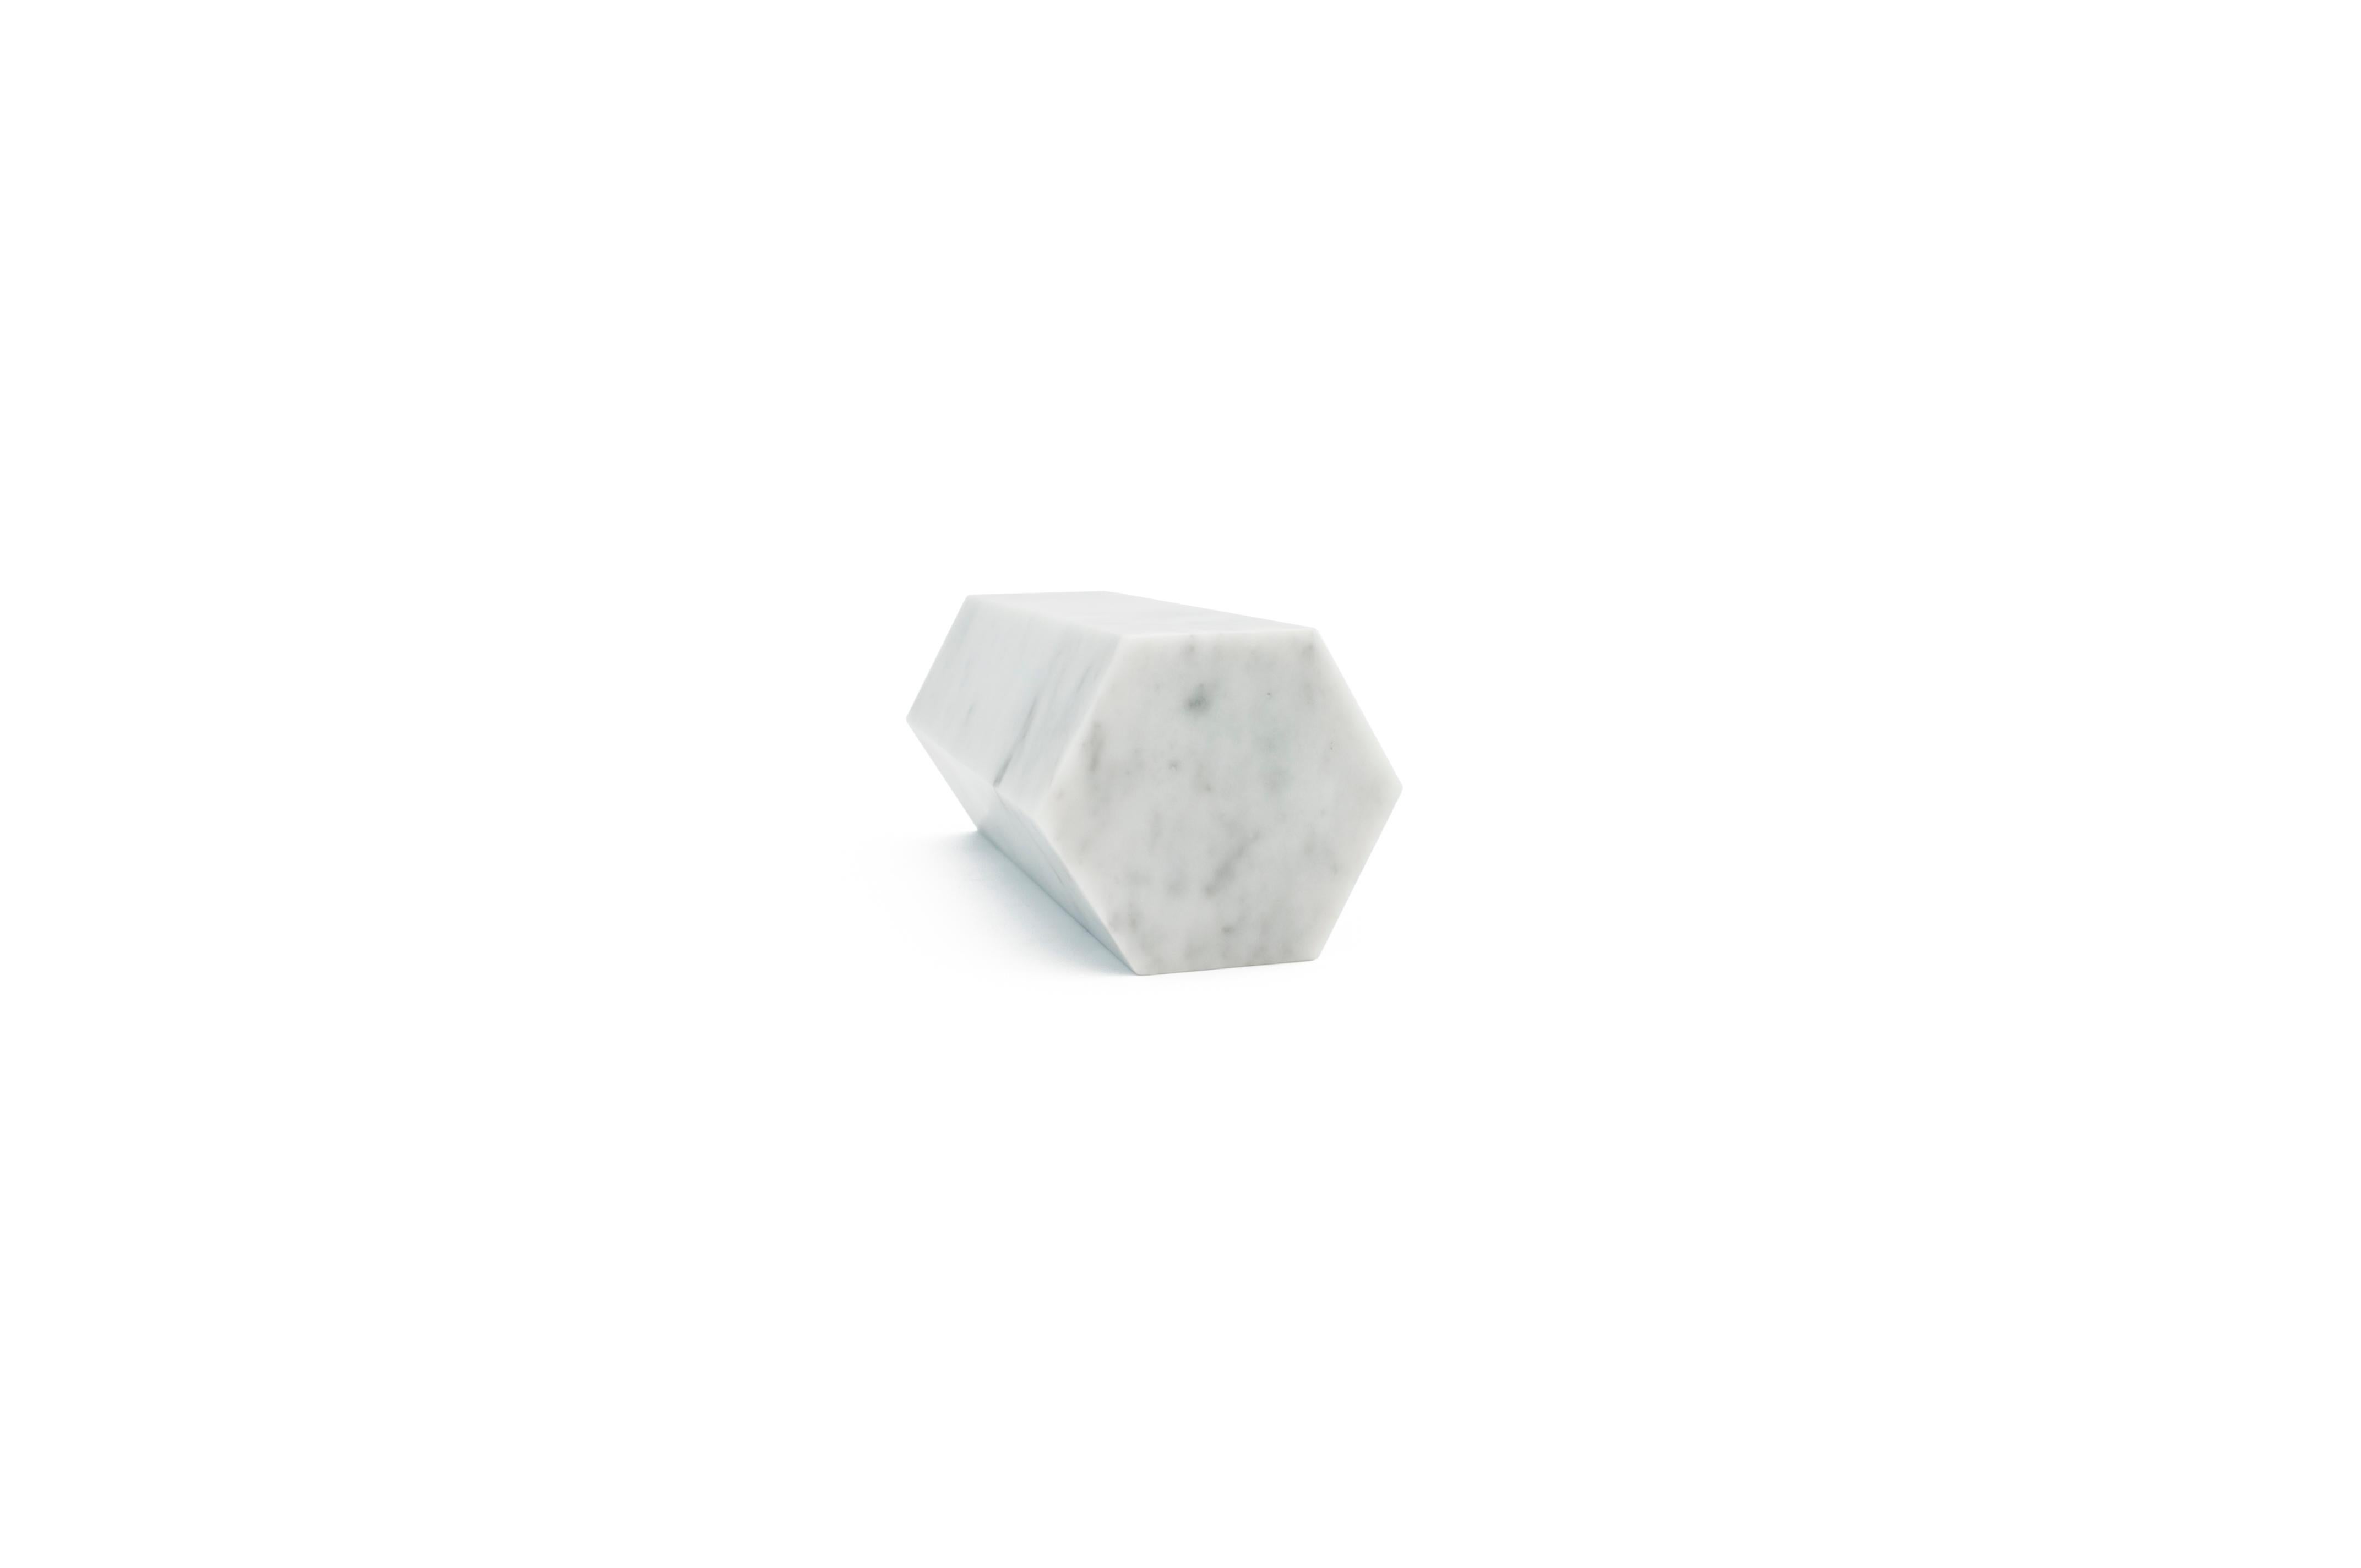 Ein großes dekoratives Prisma/Buchstütze aus weißem Carrara-Marmor voll. Geschliffene Oberfläche.
Jedes Stück ist ein Unikat (jeder Marmorblock hat eine andere Maserung und Schattierung) und wird von italienischen Handwerkern, die seit Generationen